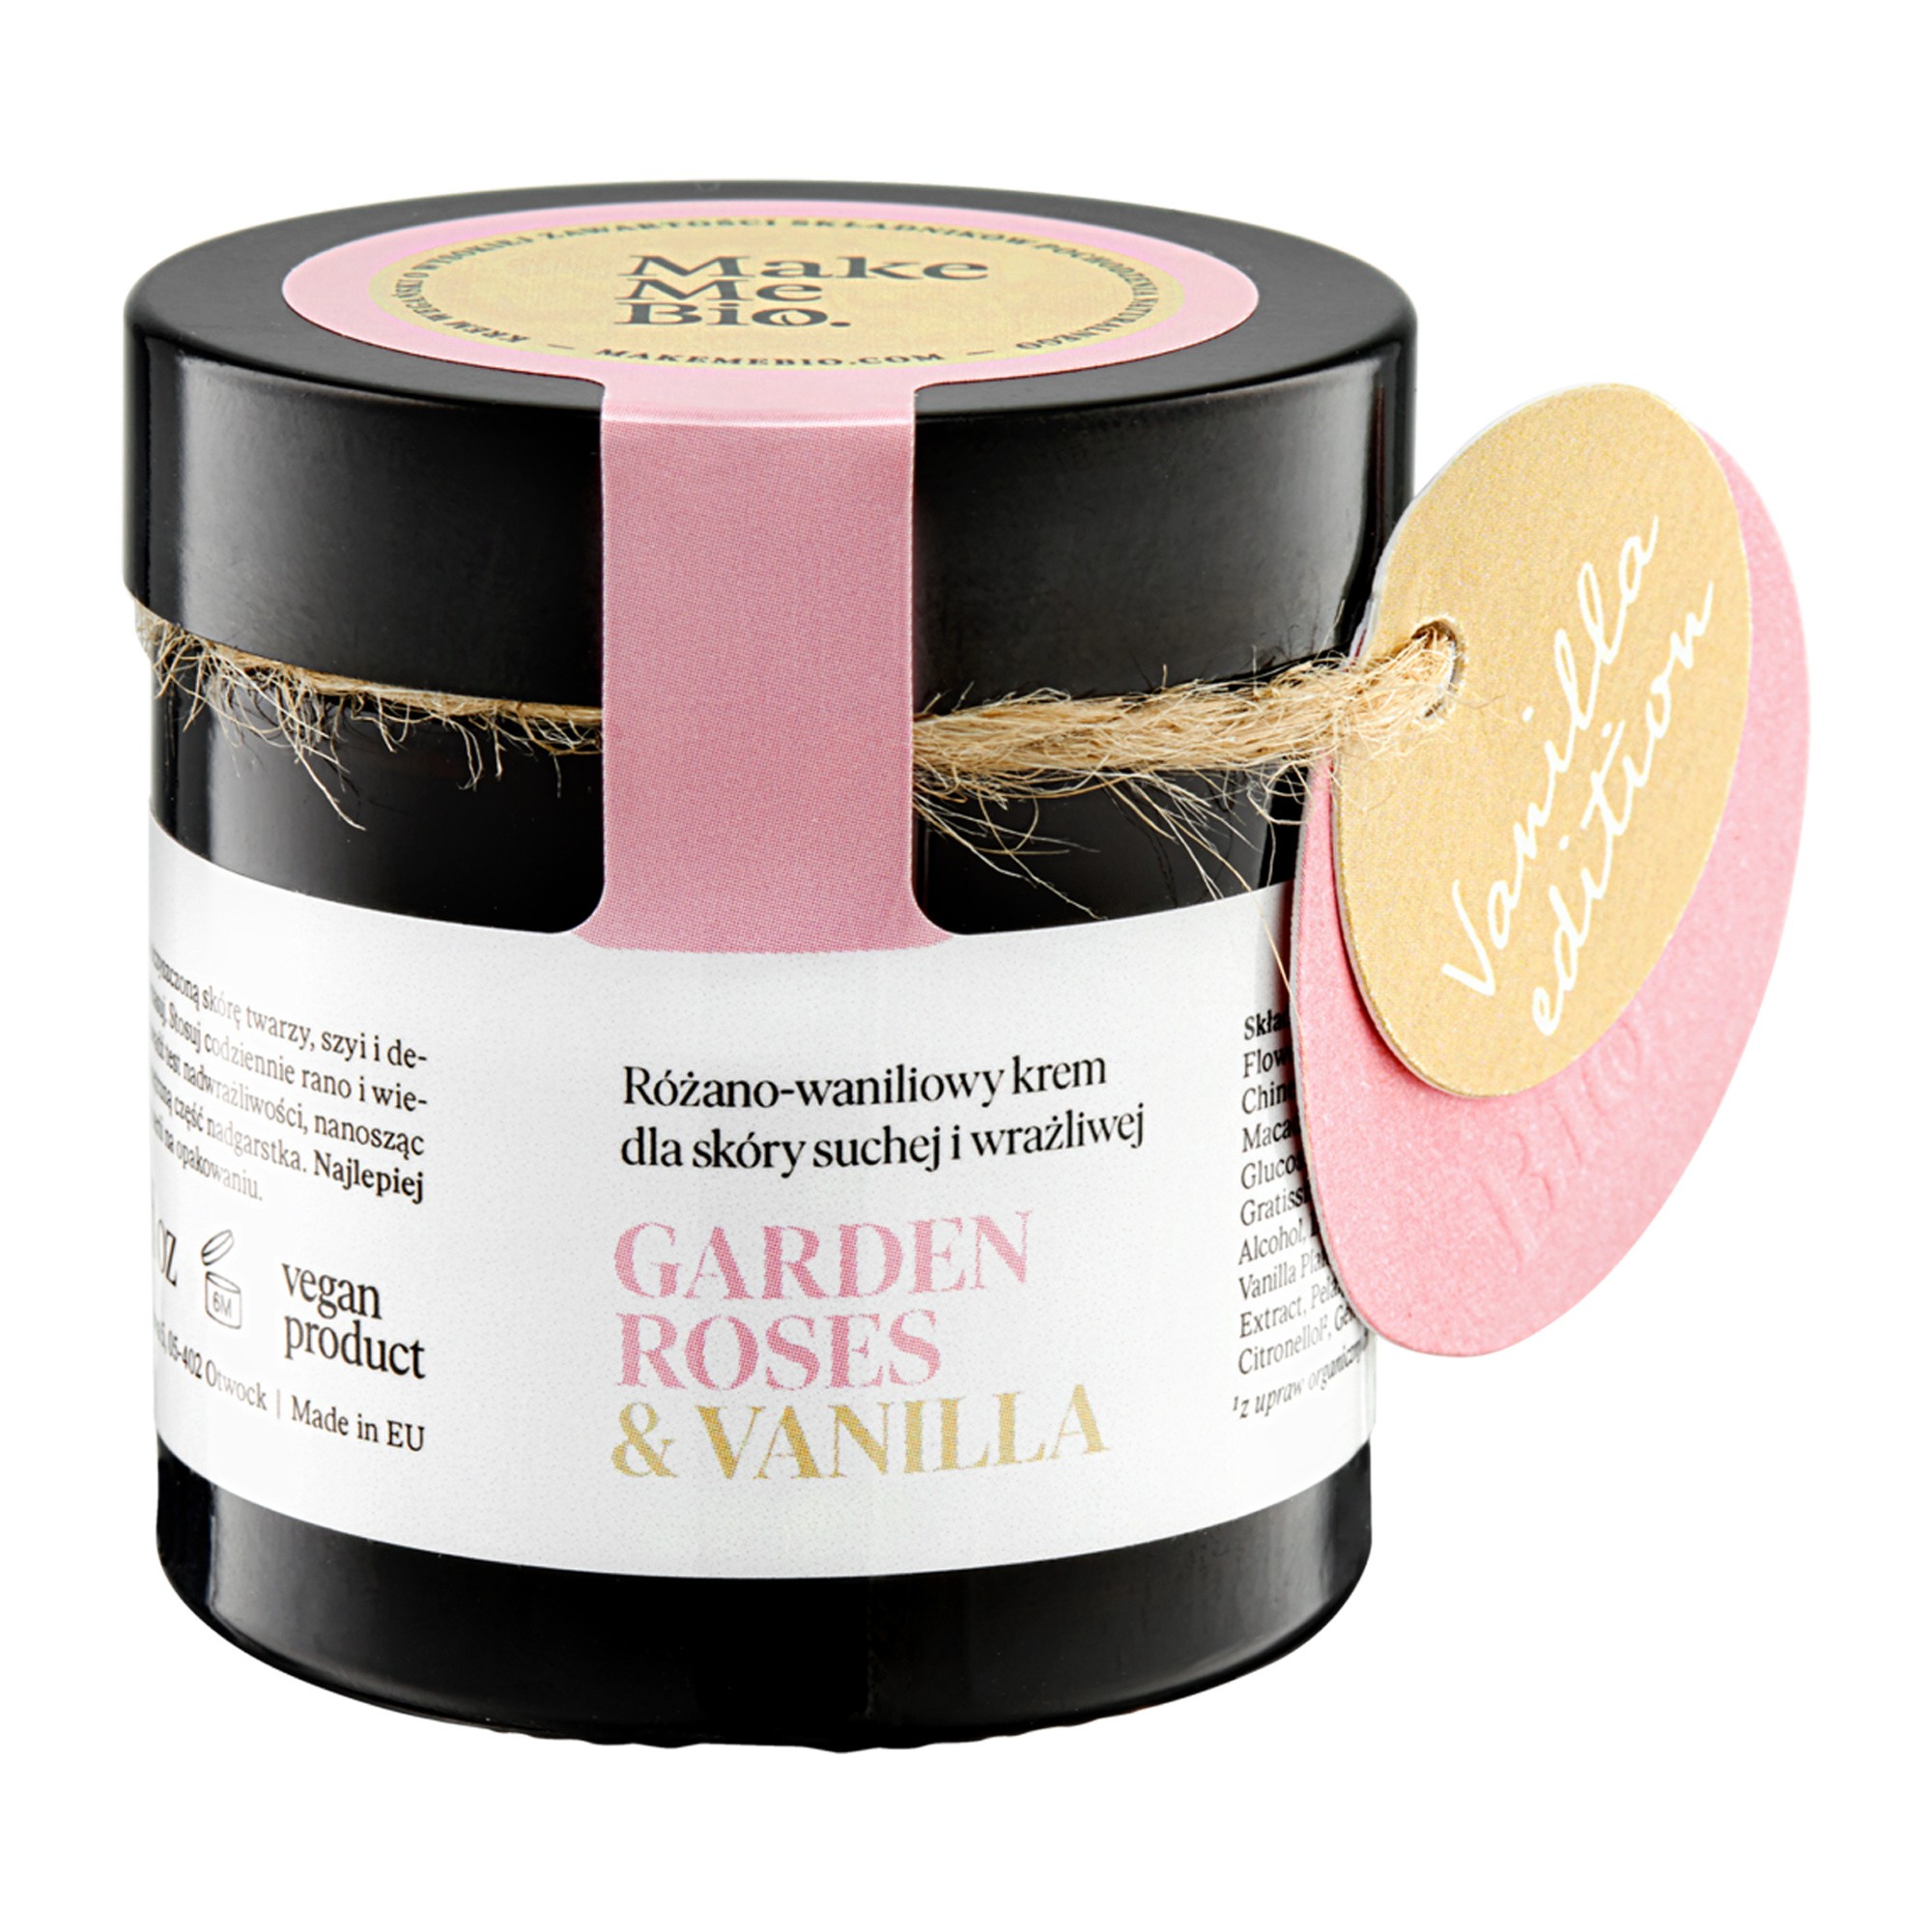 Make Me Bio Garden Roses & Vanilla, różano-waniliowy krem dla skóry suchej i wrażliwej, 60 ml